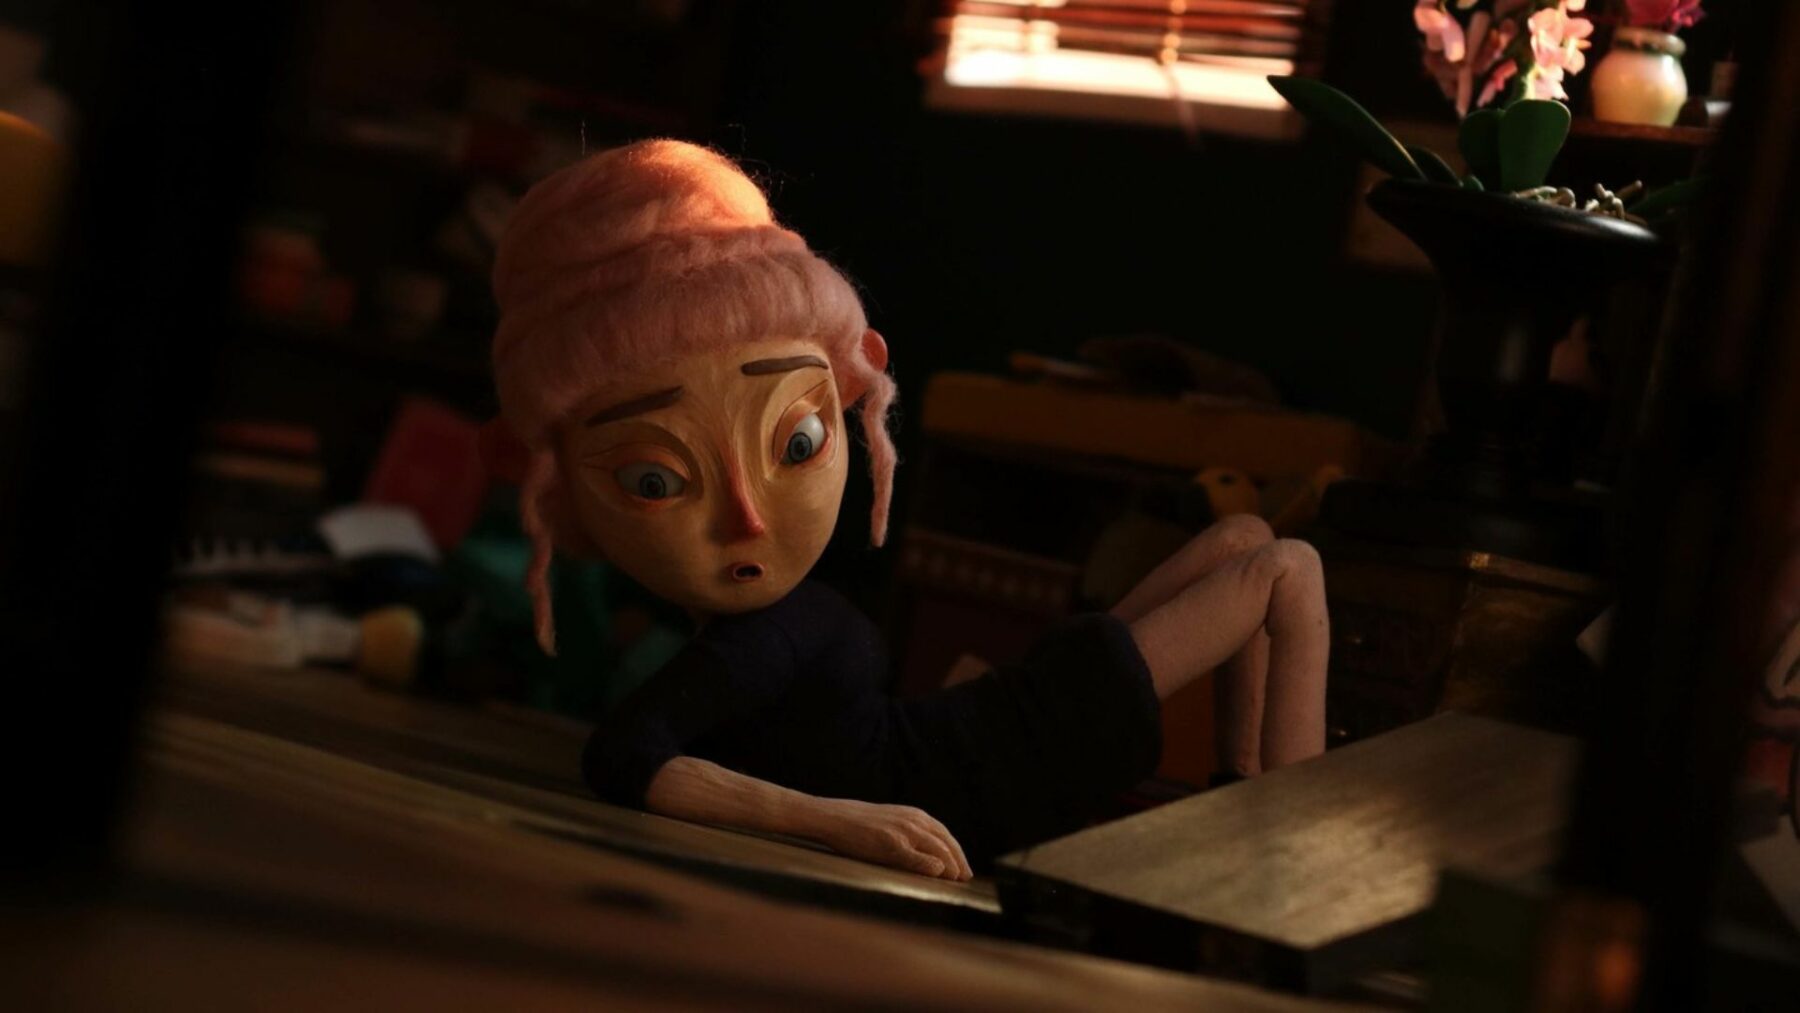 Kadr z animacji lalkowej przedstawiający kobietę w salonie.